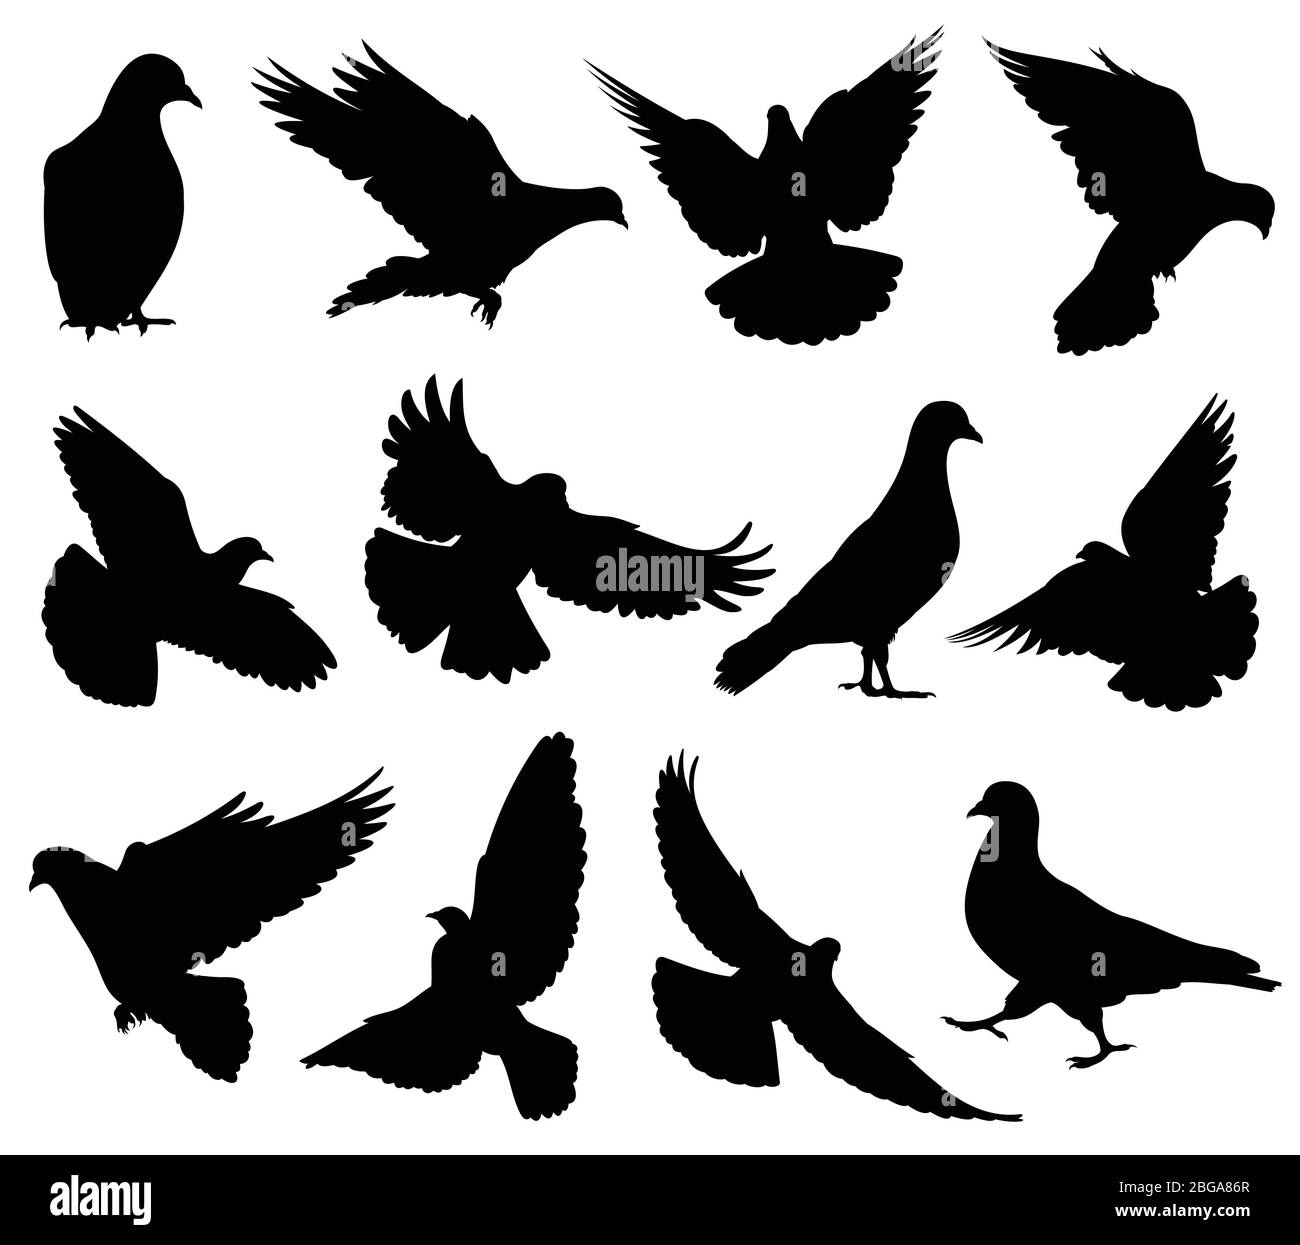 Silhouette vettoriali volanti colombali isolate. I piccioni hanno stabilito i simboli di amore e di pace. Figura nera della forma colomba e della silhouette del piccione Illustrazione Vettoriale